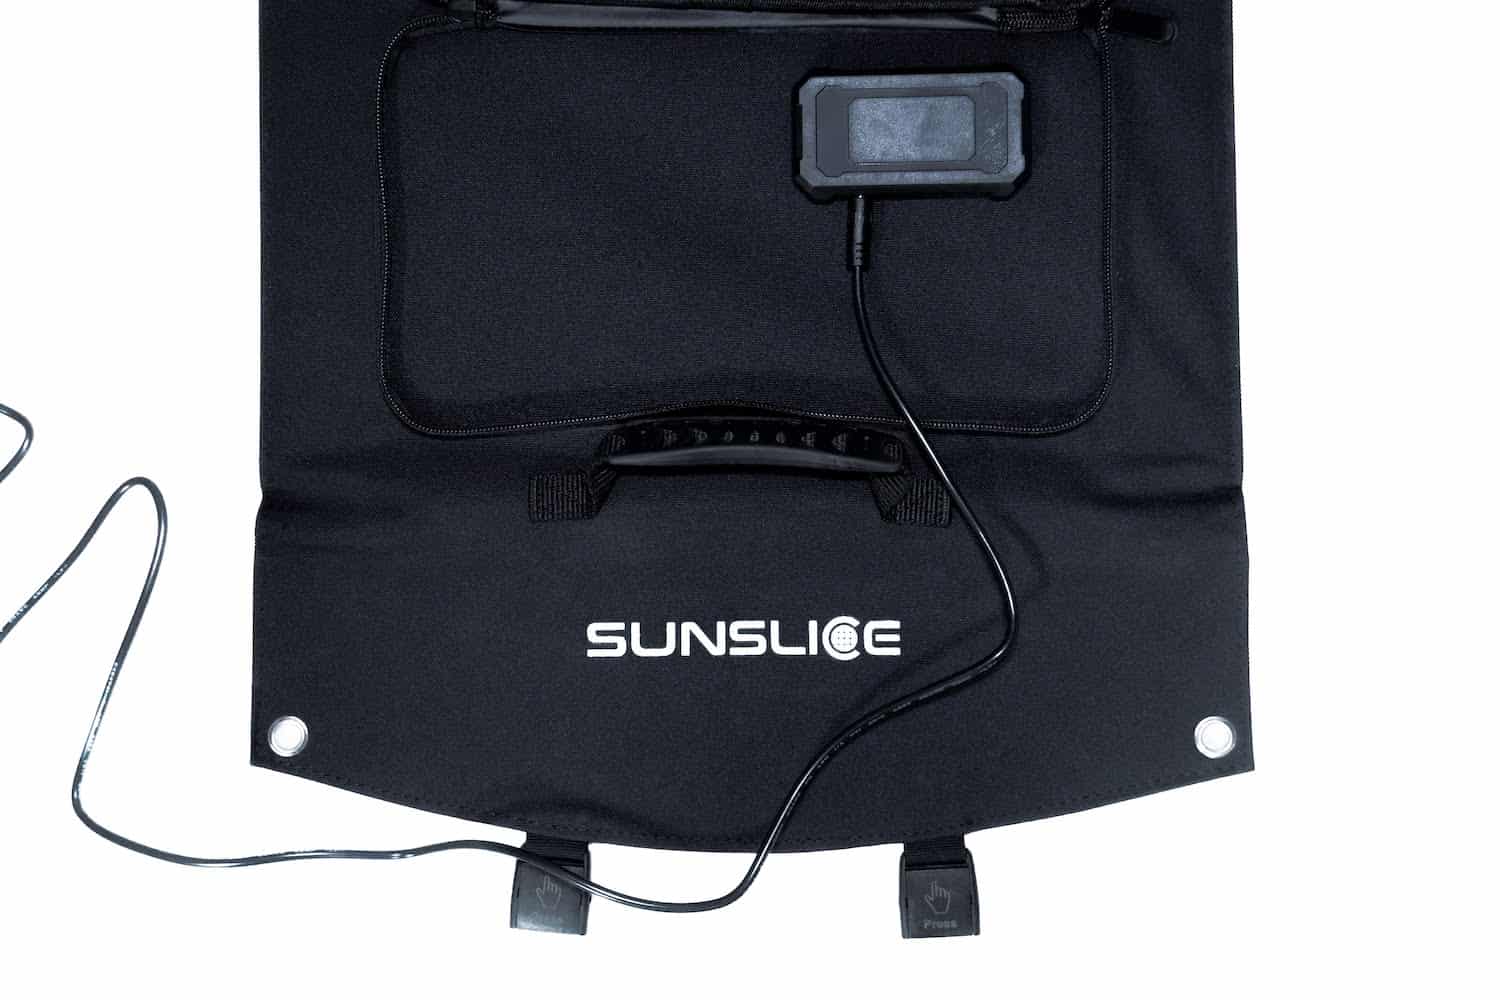 photo sur fond blanc d'une USB solaire connectée à son panneau solaire pliable